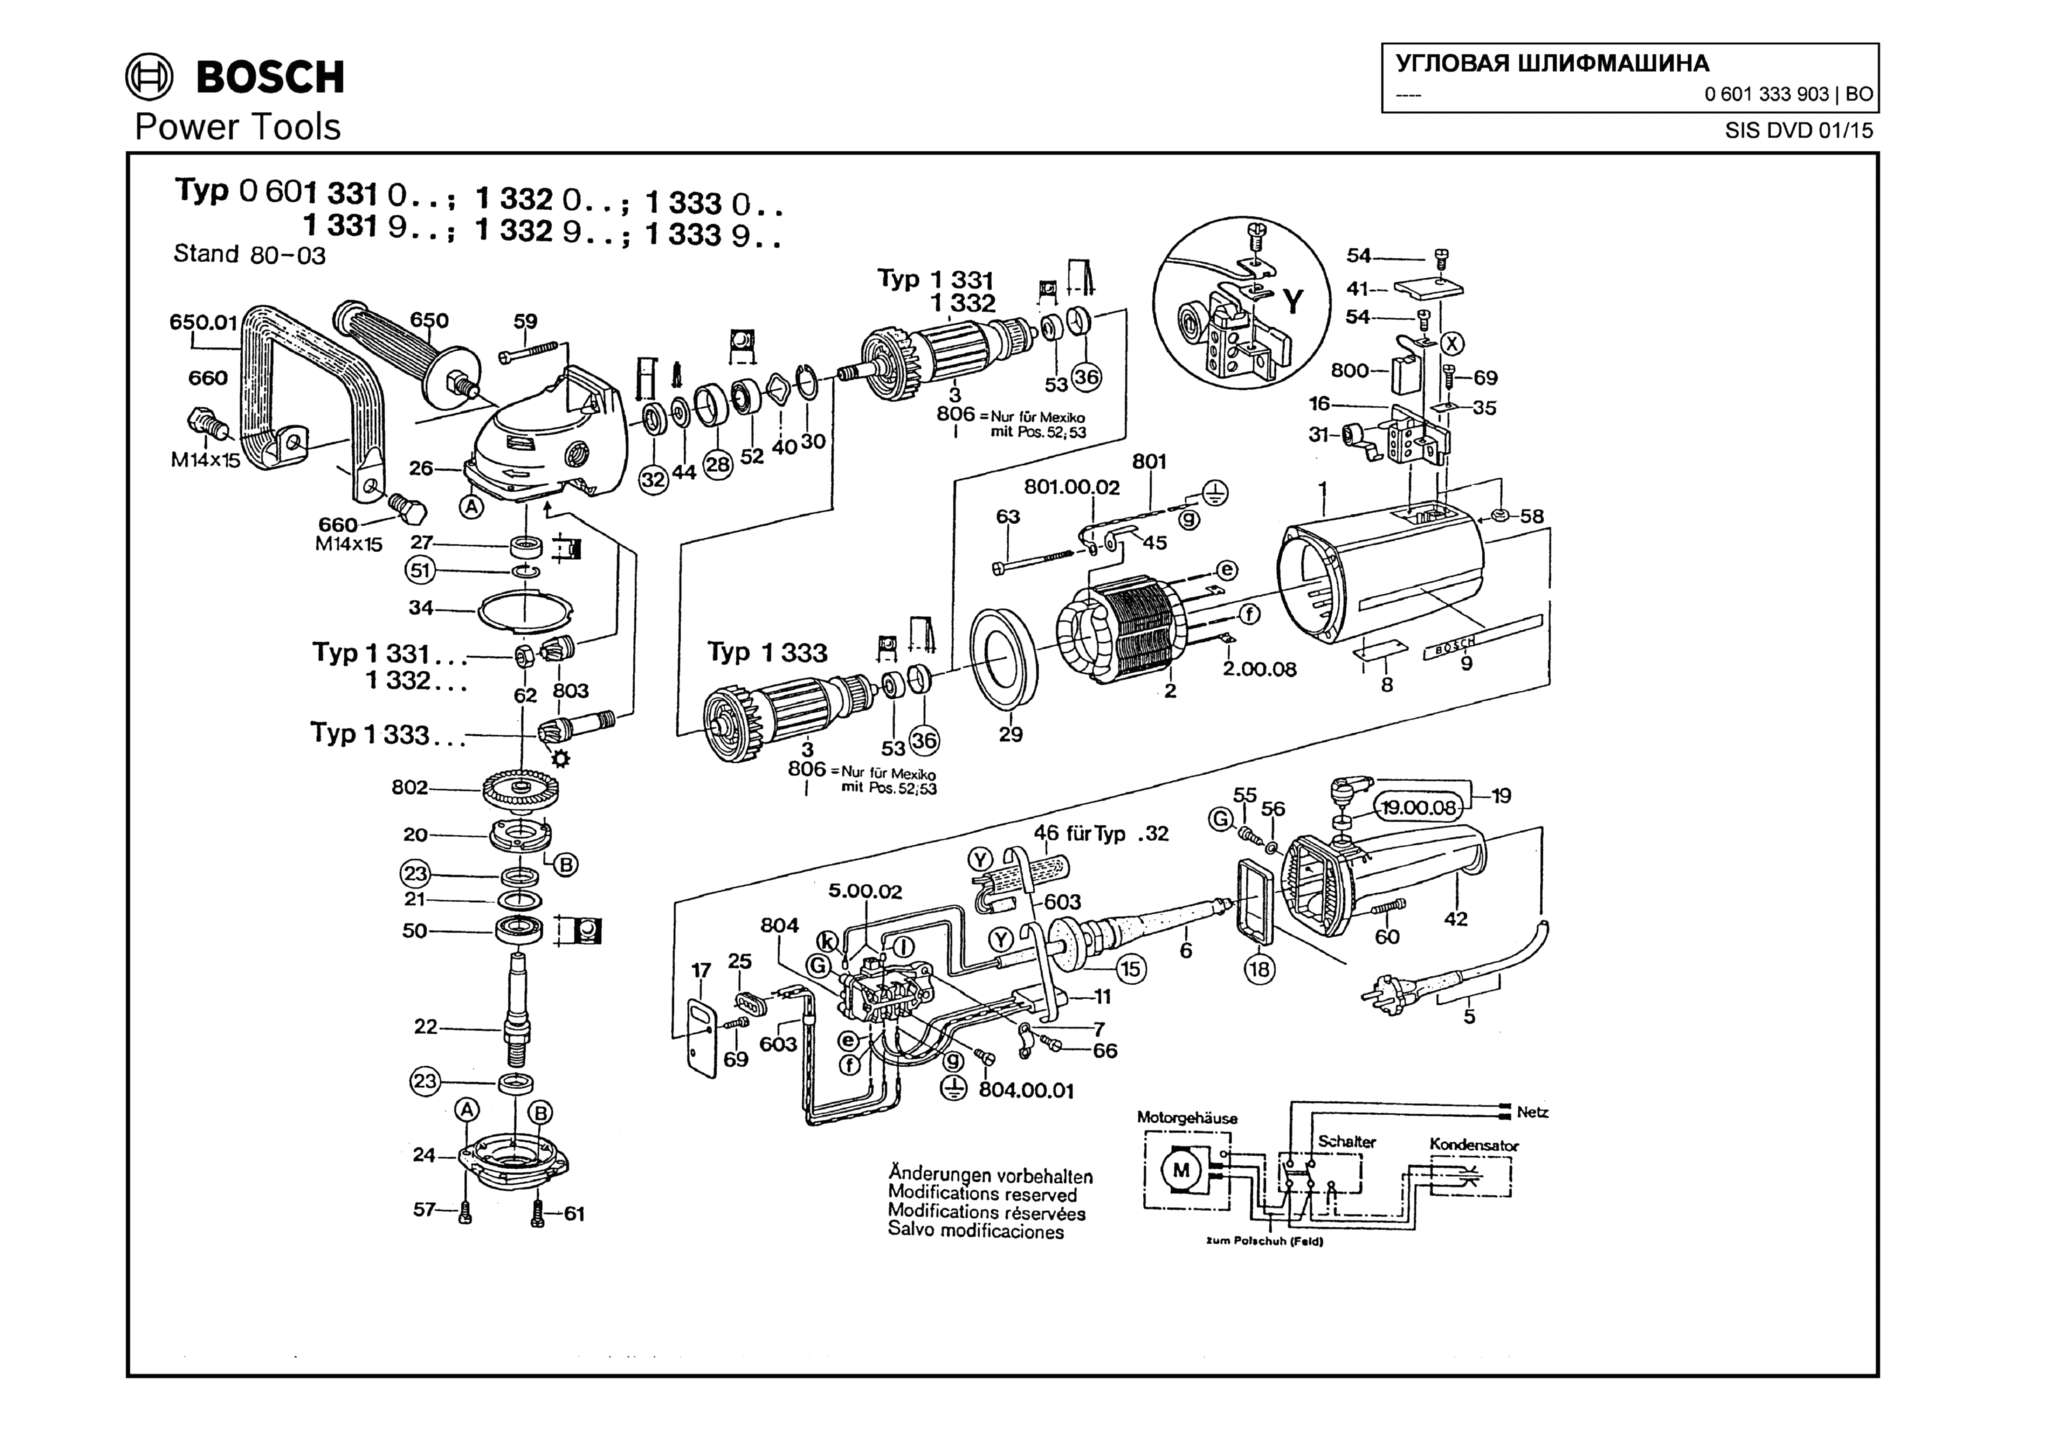 Запчасти, схема и деталировка Bosch (ТИП 0601333903)